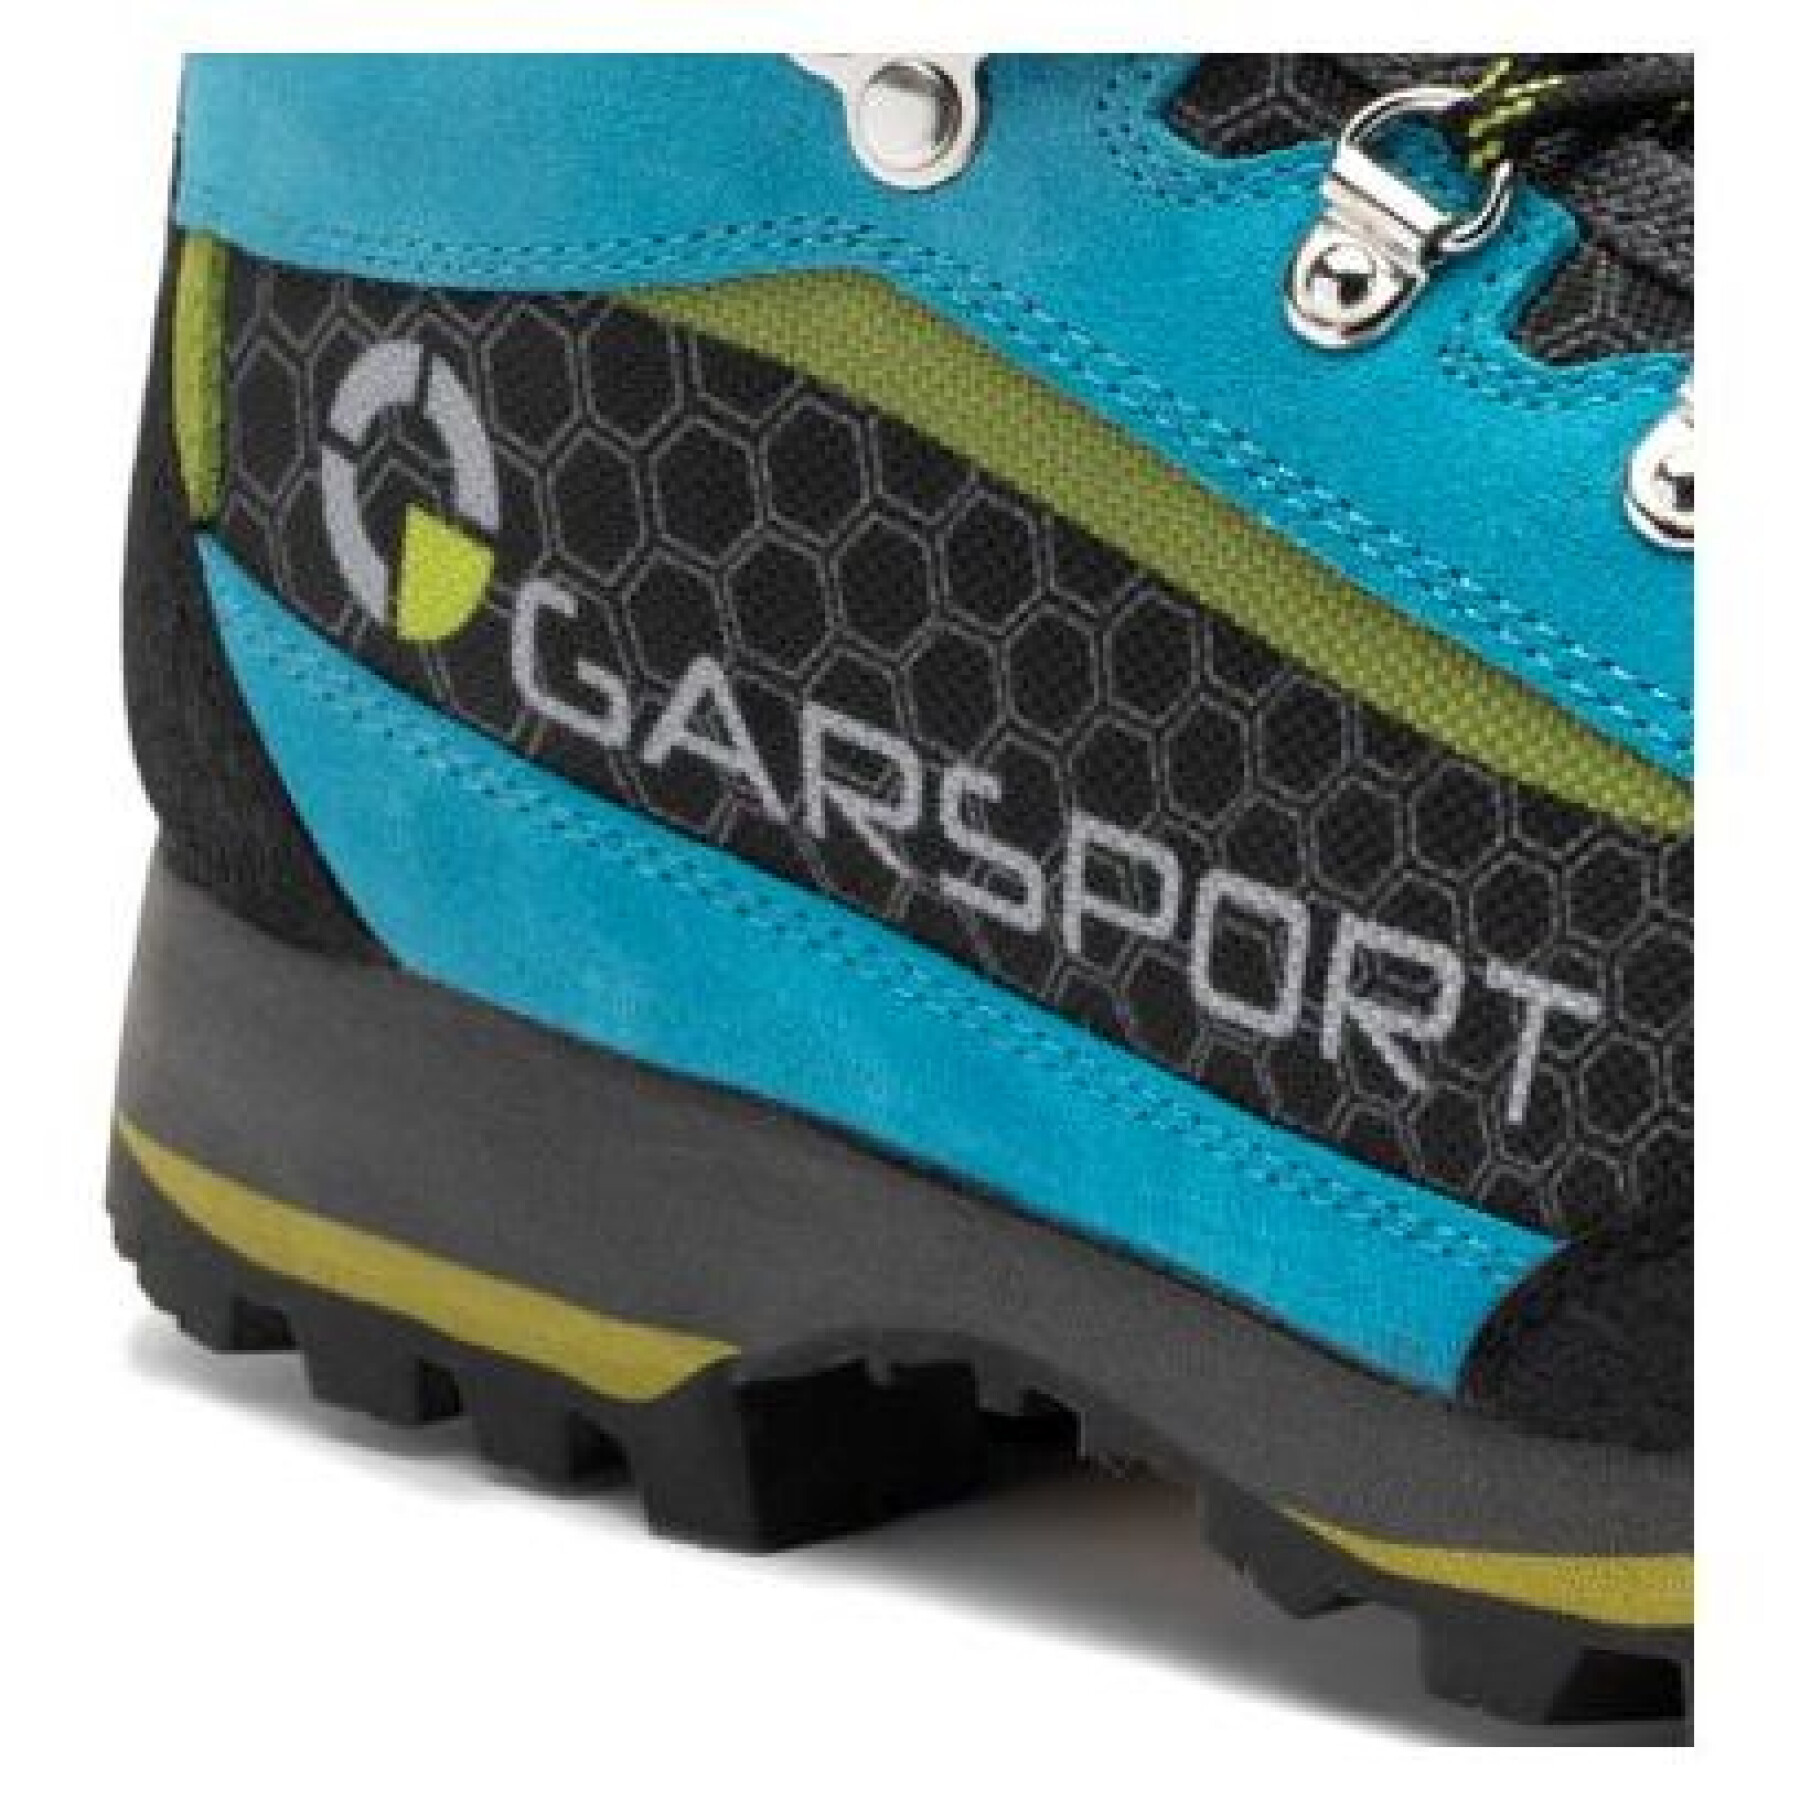 Chaussures de randonnée femme Garsport Faloria WP